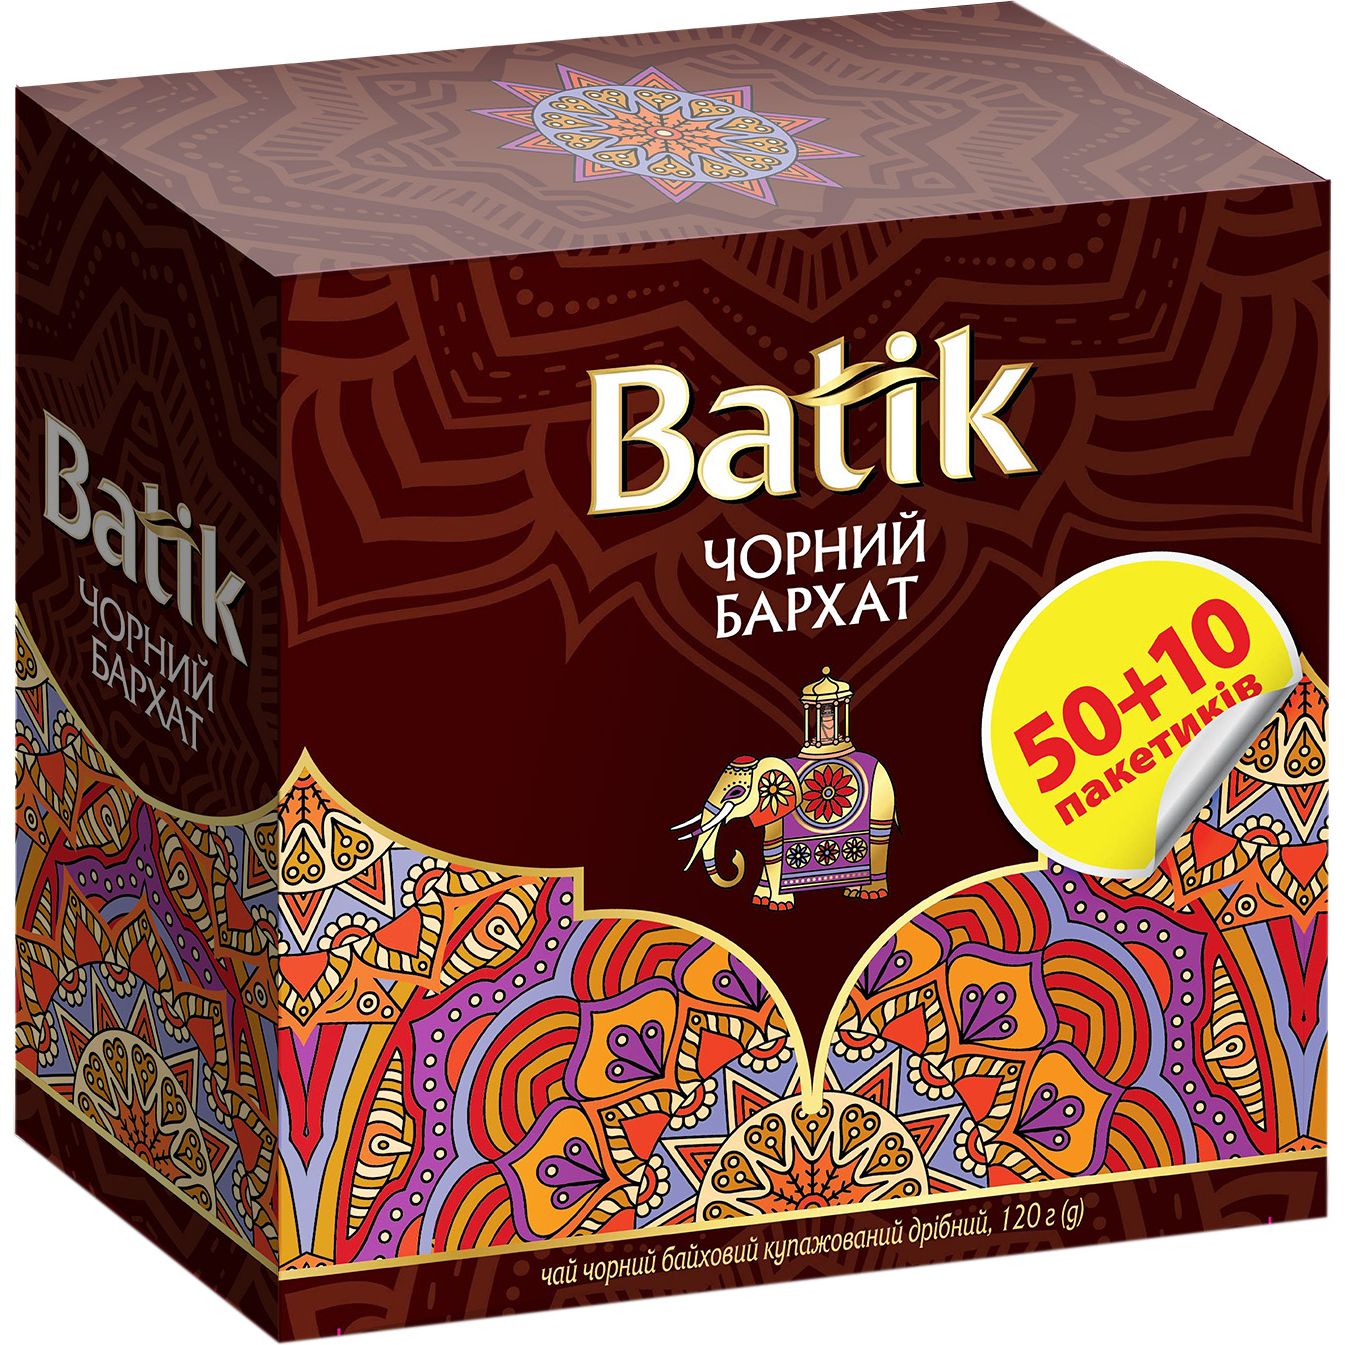 Чай чорний Batik Чорний бархат купажований, дрібний, 50+10 шт. - фото 4